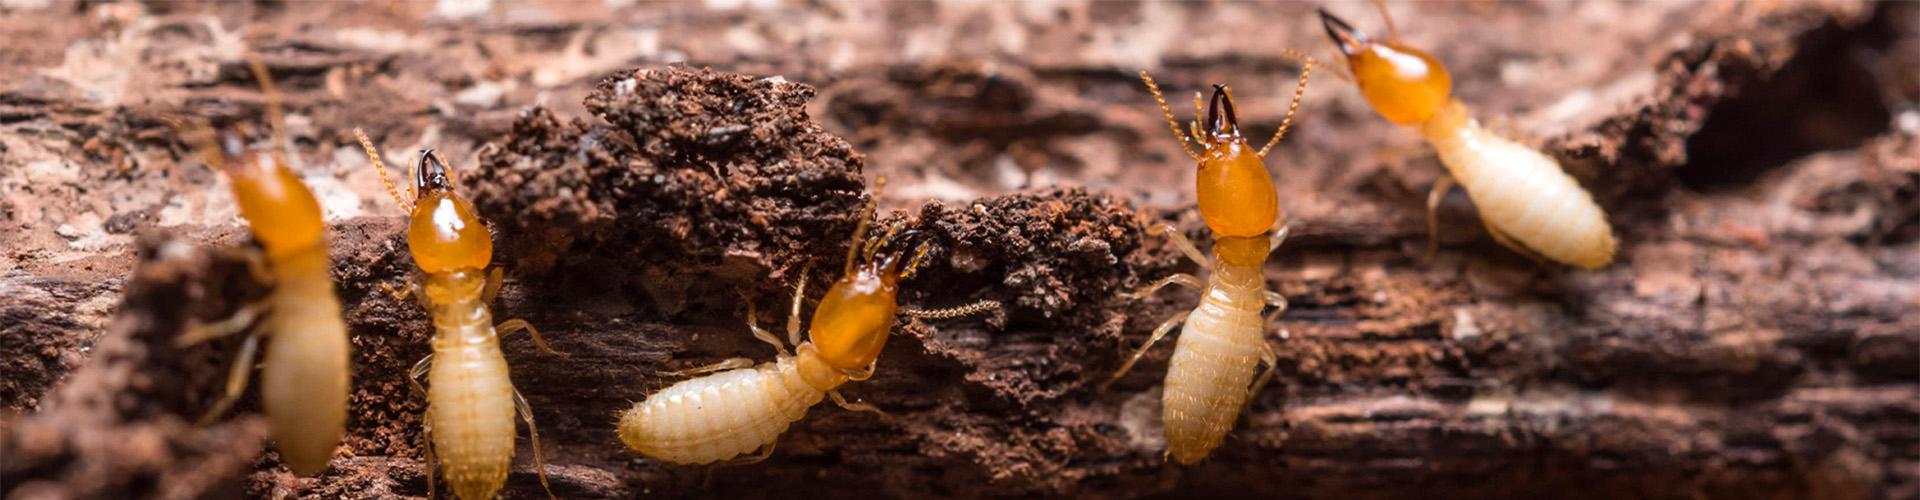 denver termite control